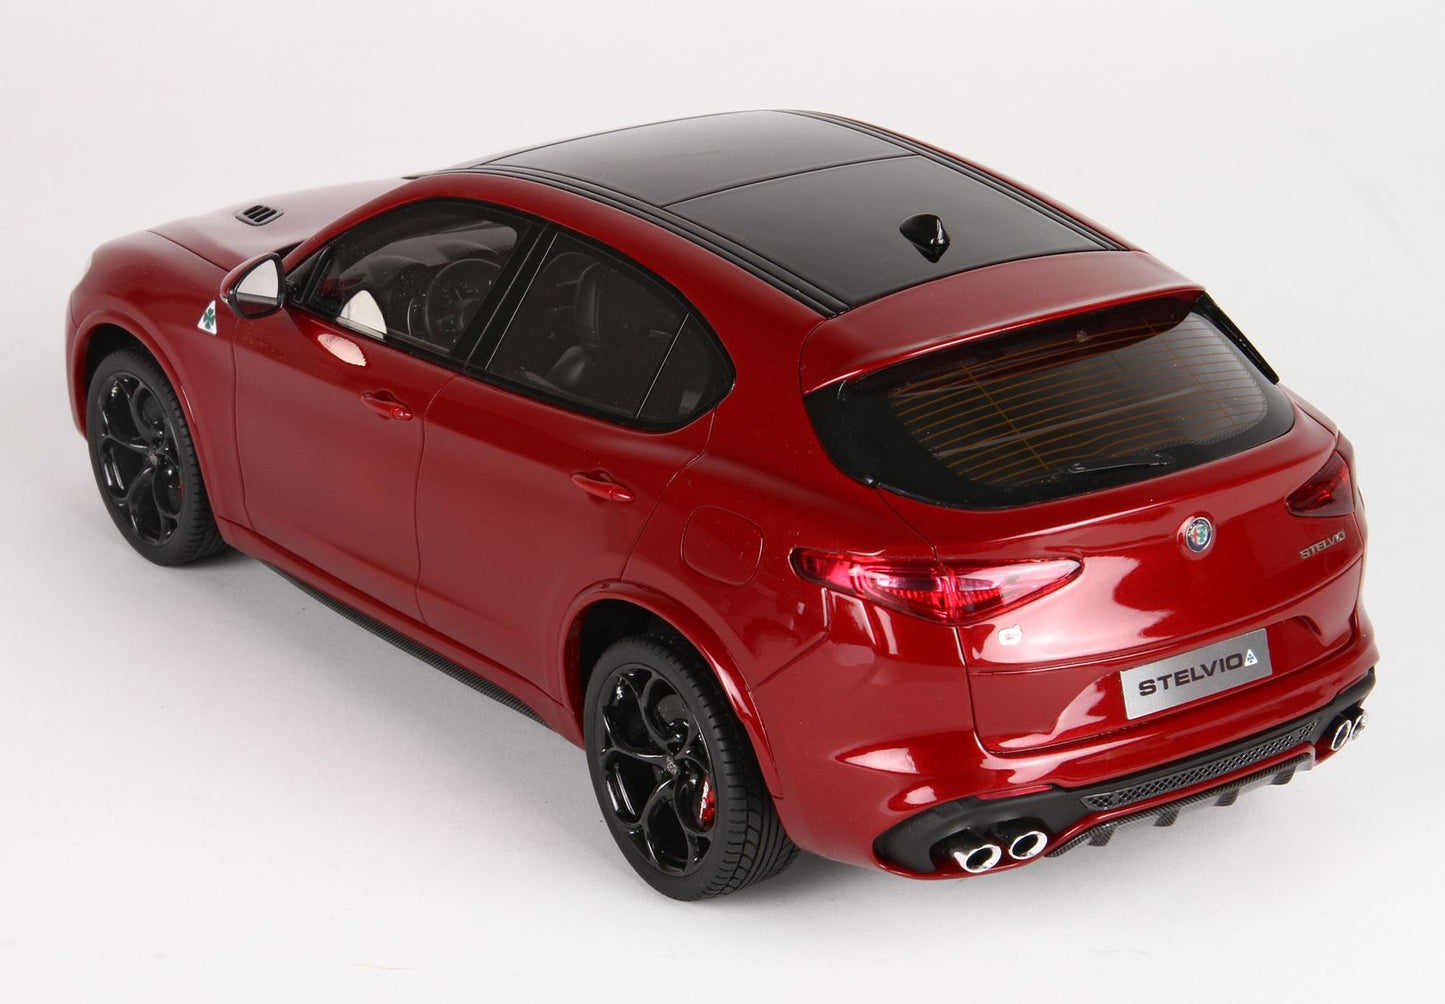 BBR 1/18 Alfa Romeo Stelvio Quadrifoglio- Rosso Competizione with Showcase - Resin Model